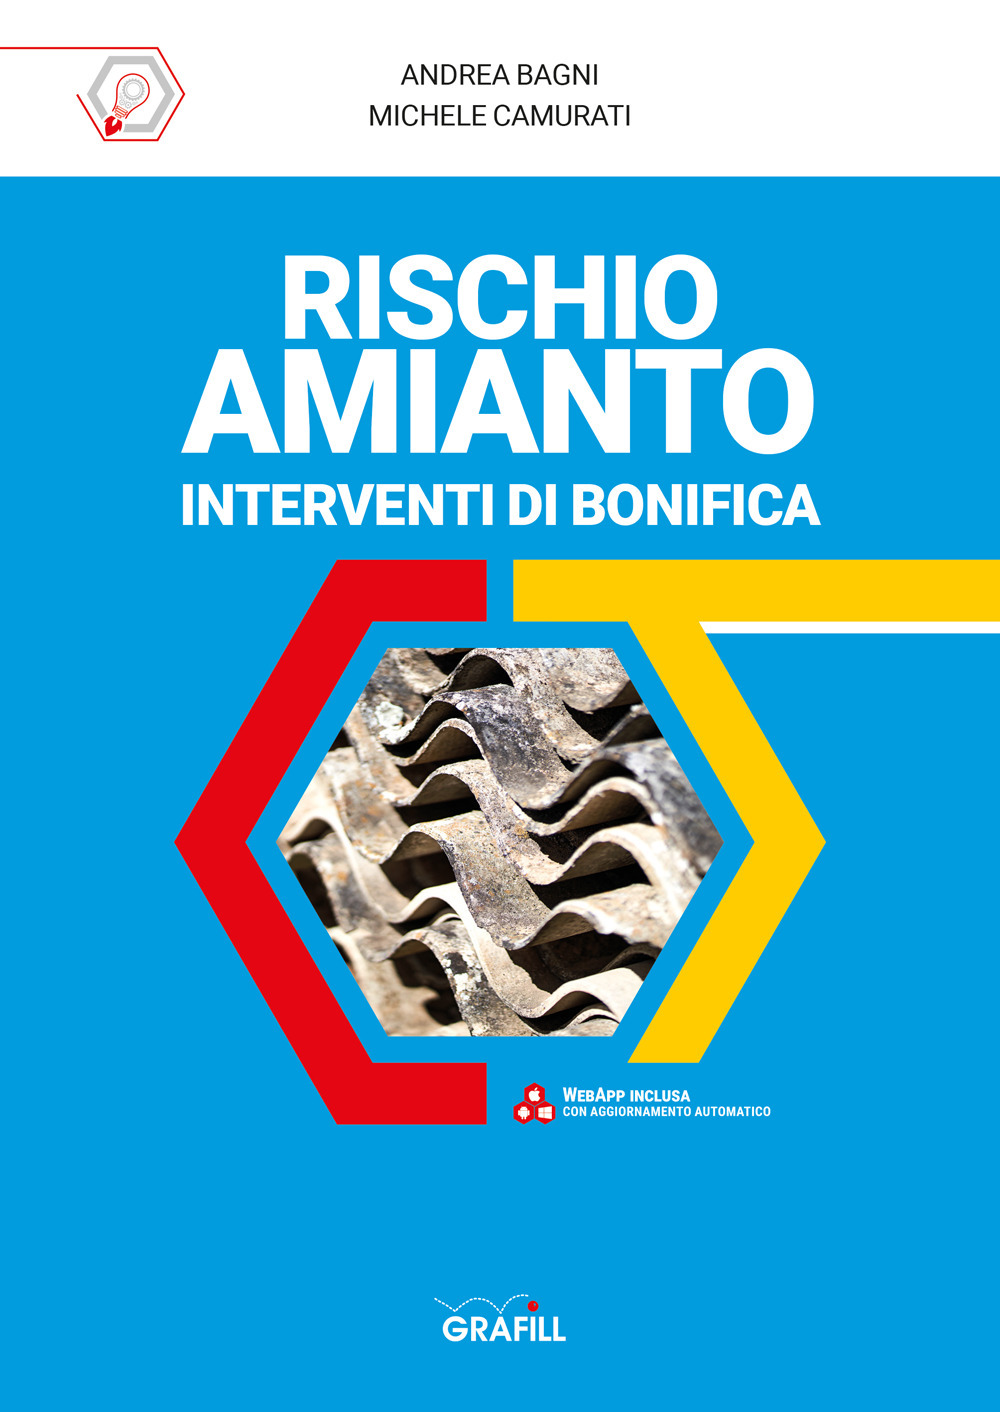 Libri Bagni Andrea / Michele Camurati - Rischio Amianto: Interventi Di Bonifica. Con Software NUOVO SIGILLATO SUBITO DISPONIBILE